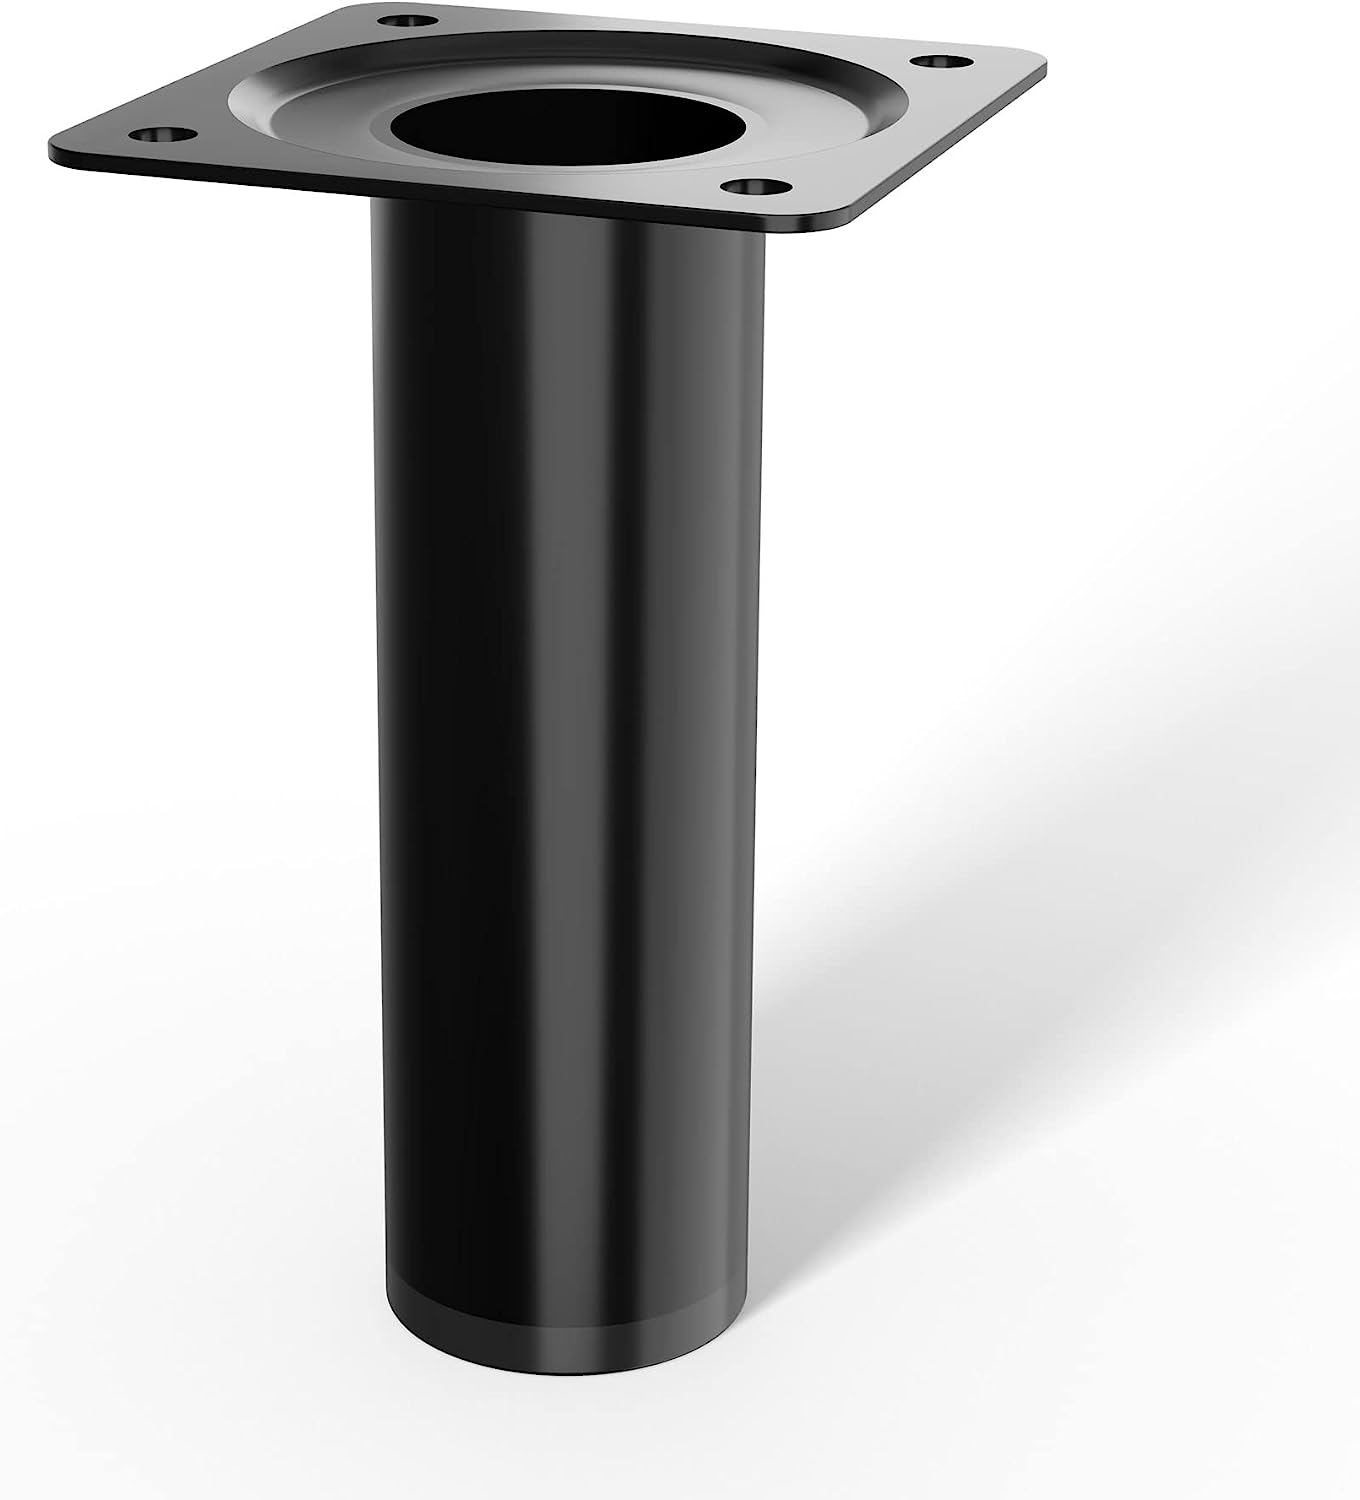 LouMaxx Tischbeine Metall rund – Stahlrohrfüße Ø 30 mm x 100mm inkl. Schrauben – Tischbeine schwarz mit Anschraubplatte – Hochwertige Tischfüße für individuelle DIY-Möbel – 4er Set in Schwarz